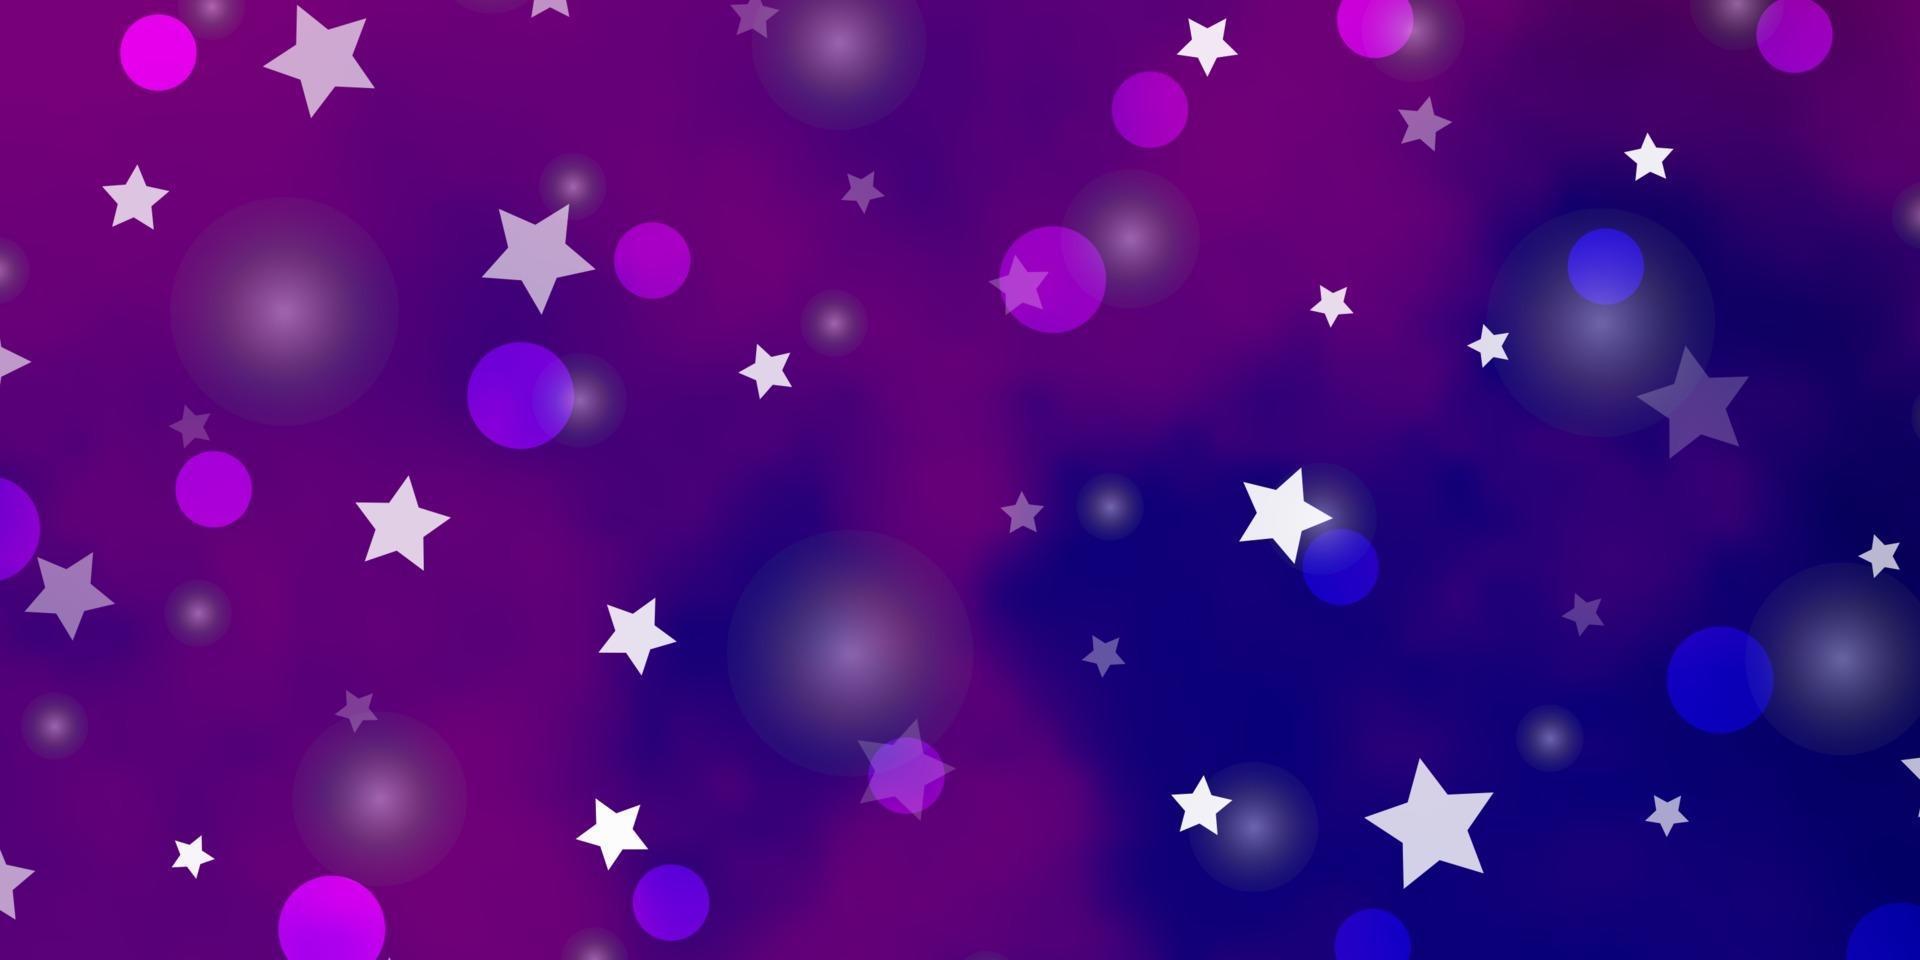 disposition de vecteur violet clair, rose avec des cercles, des étoiles.